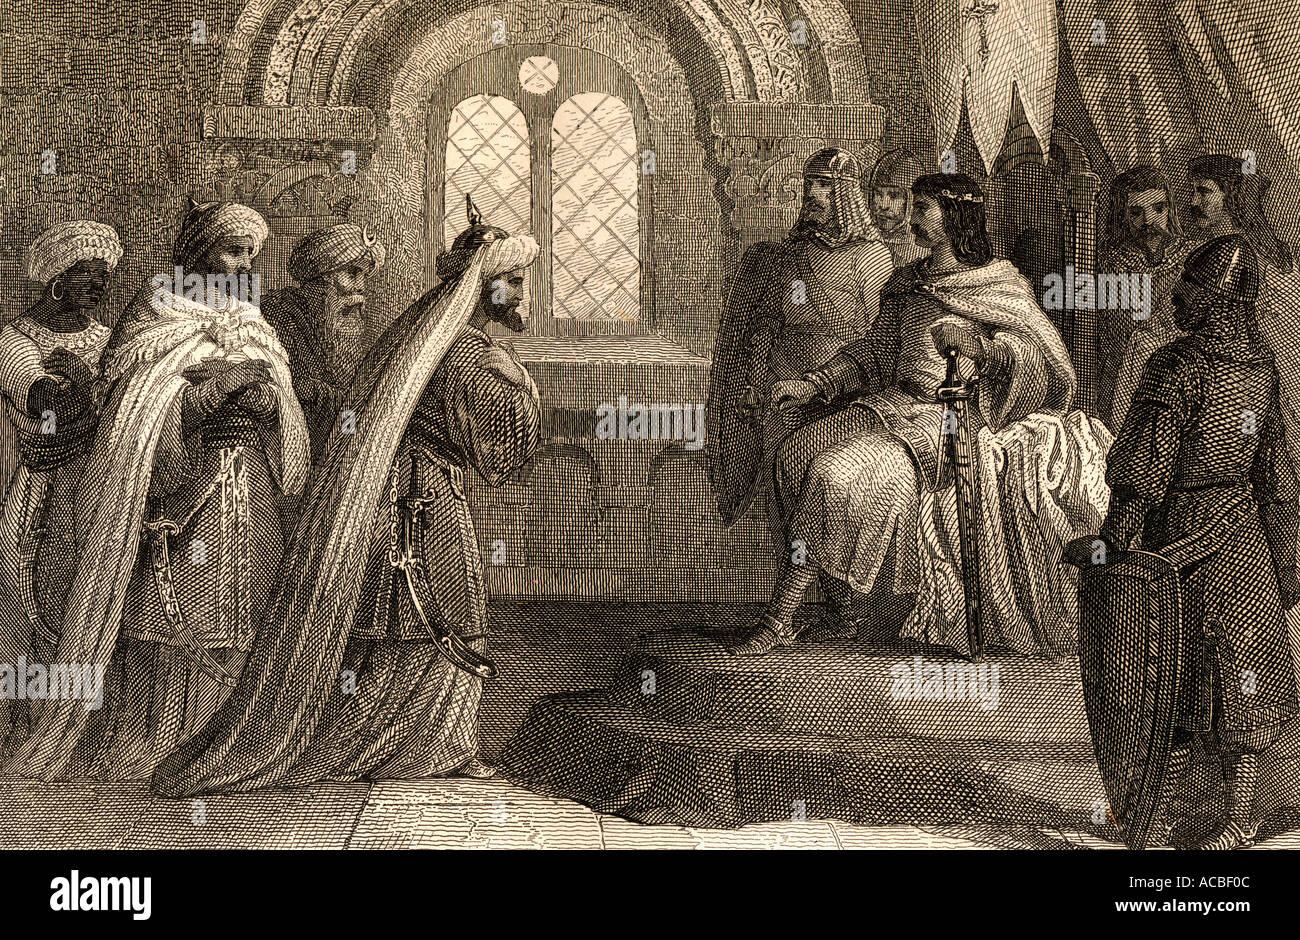 Abdallah invia un ambasciatore presso il re Alfonso dopo la caduta di Zamora, Spagna nel 1072. Foto Stock